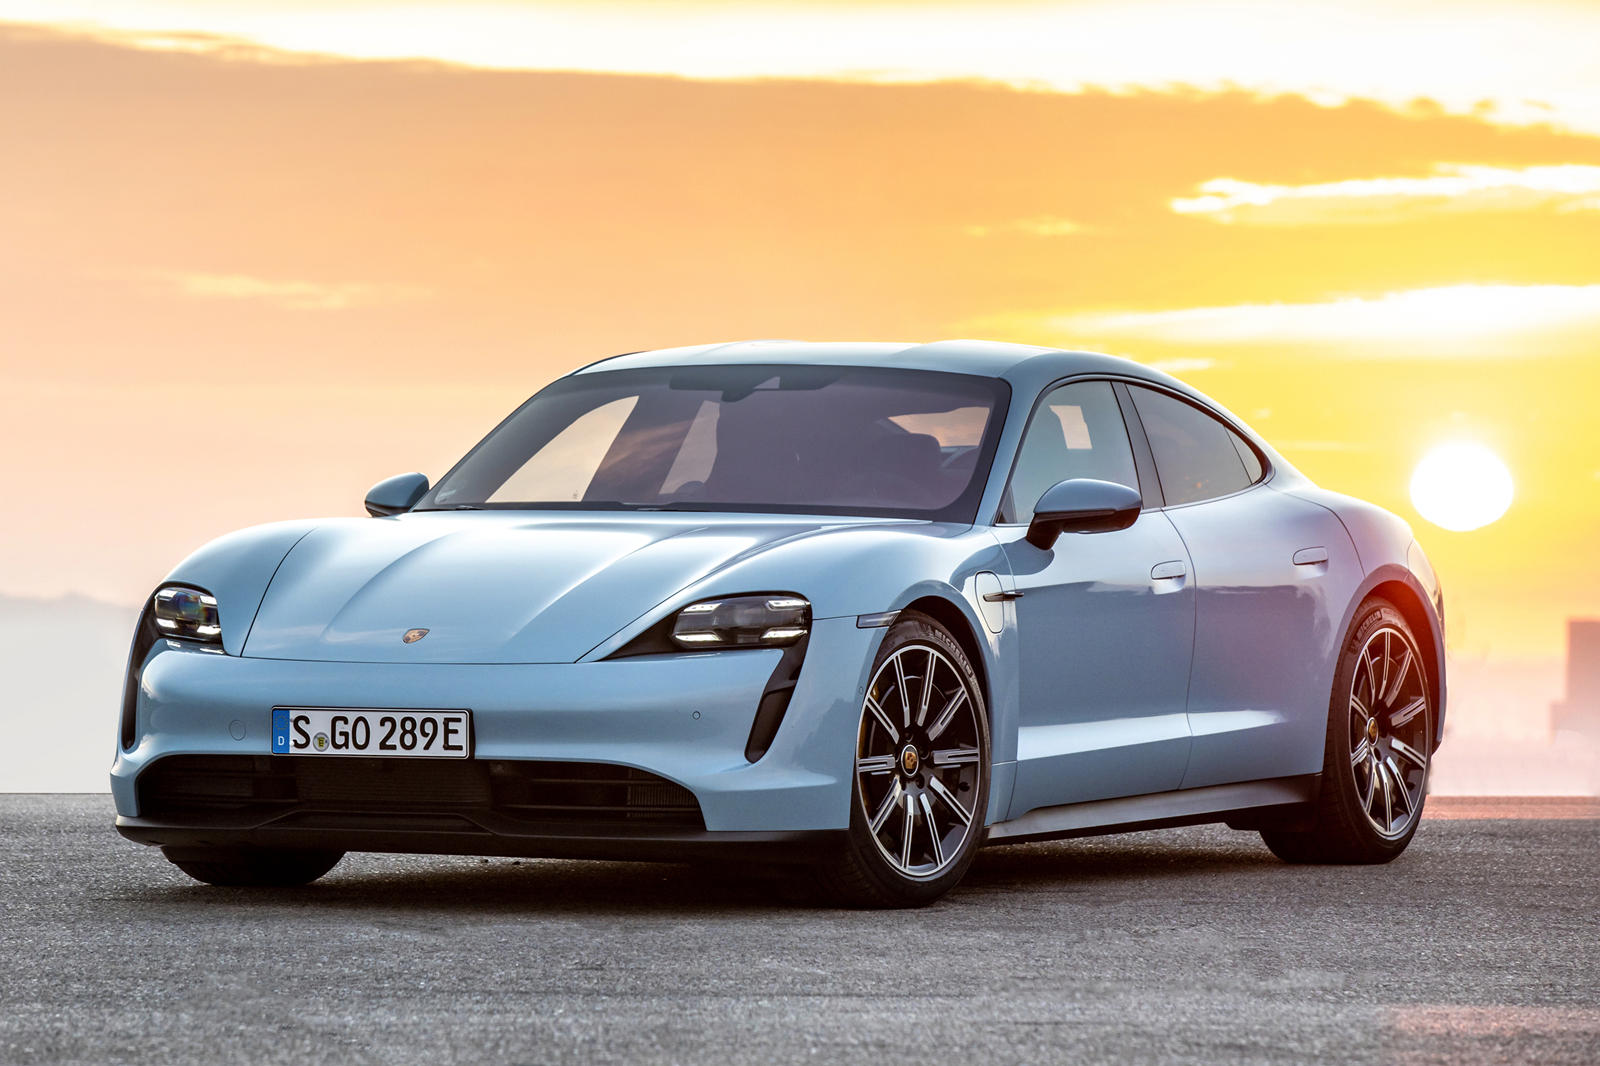 «400 сотрудников завода Audi в Неккарзульме [Германия] временно переходят на работу в Porsche в Цуффенхаузене для поддержки, среди прочего, производства полностью электрического Porsche Taycan», - подтвердил представитель Audi.